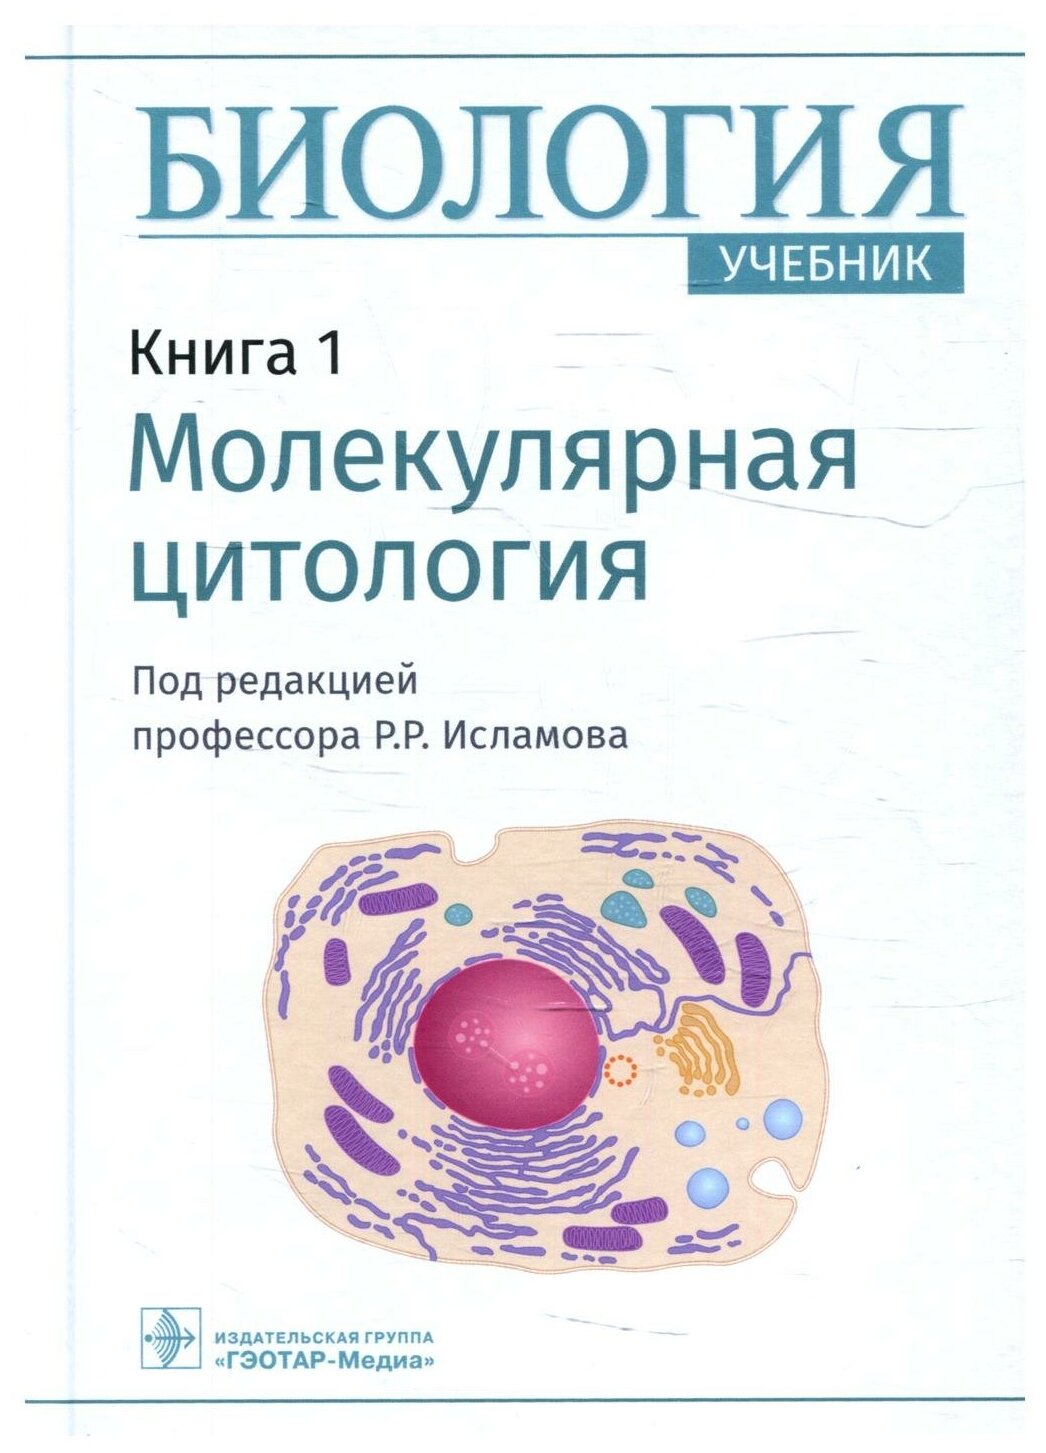 Биология. Книга 1. Молекулярная цитология. Учебник - фото №1